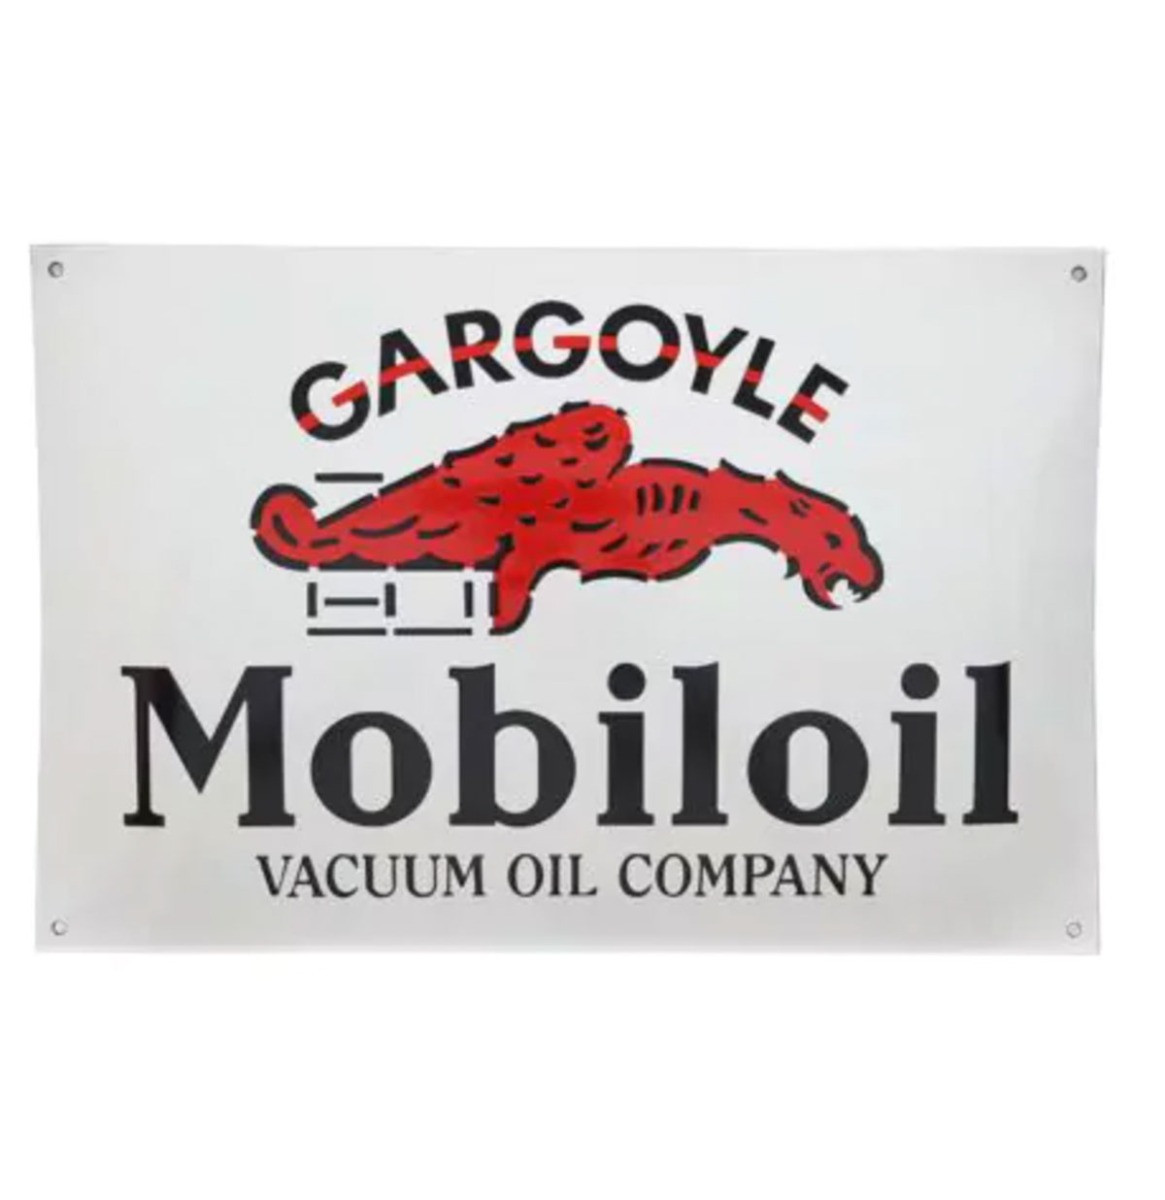 Mobiloil Gargoyle Emaille Bord - 53 x 35cm